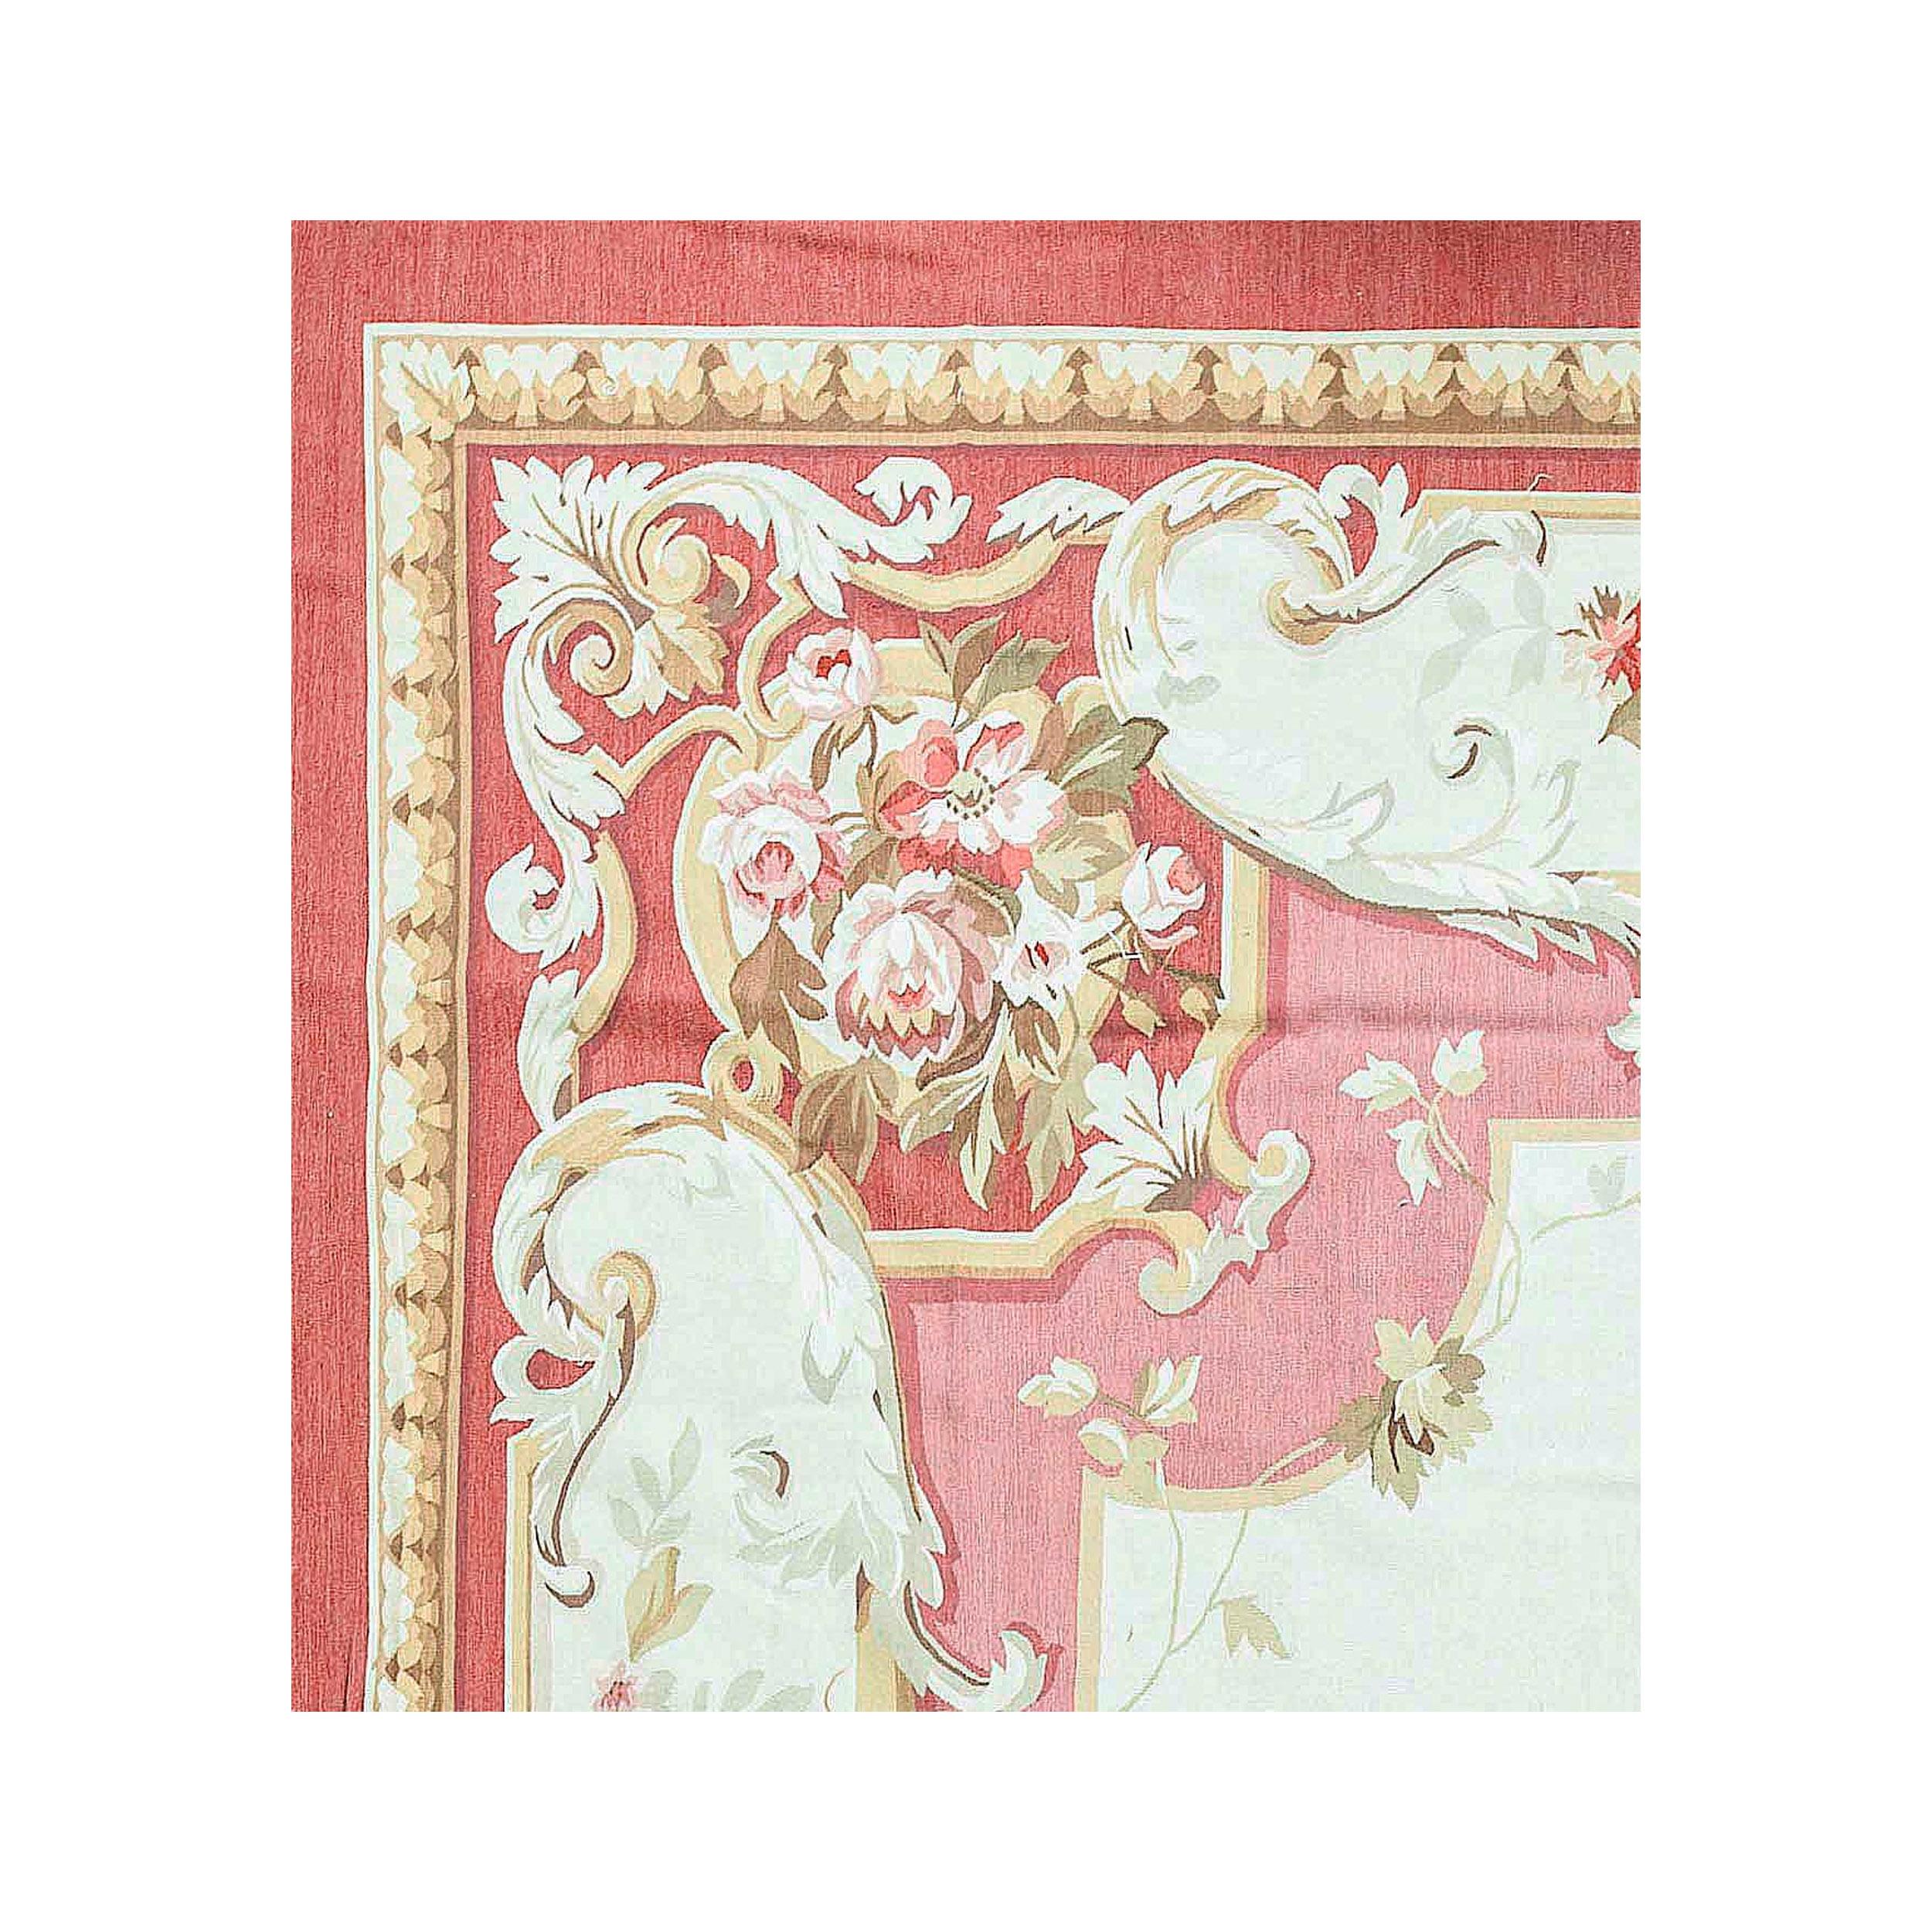 Des recréations de luxe tissées à la main des tapis classiques français à tissage plat d'Aubusson que l'on trouve dans les plus belles demeures et les palais depuis la fin du XVIIe siècle. Située sur les rives de la Creuse, en France, Aubusson est